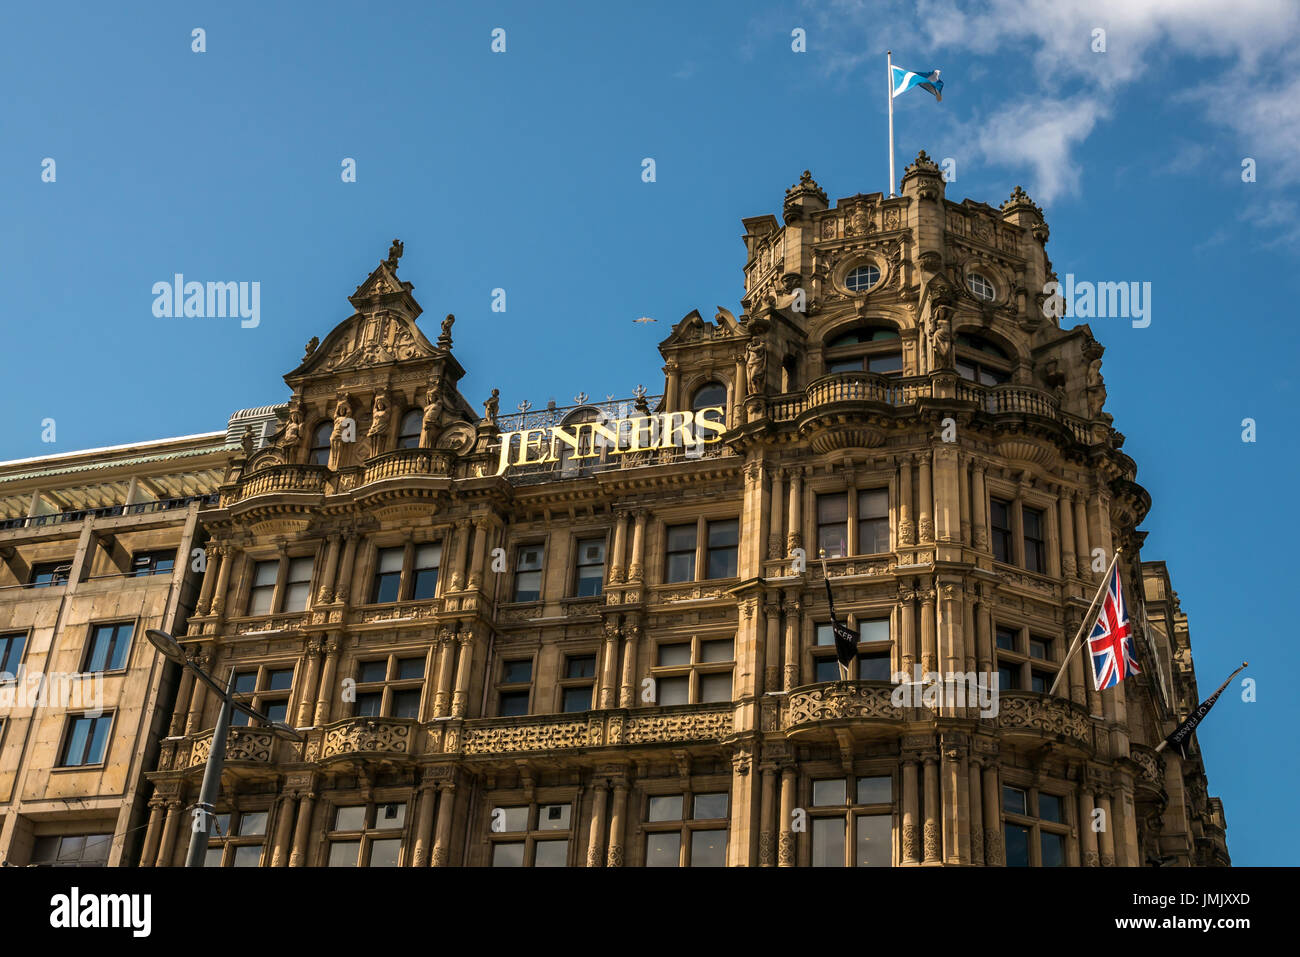 VEW der viktorianischen gotischen Architektur des Jenners-Kaufhauses von William Hamilton Beattie, Princes Street, Edinburgh, Schottland, Großbritannien Stockfoto